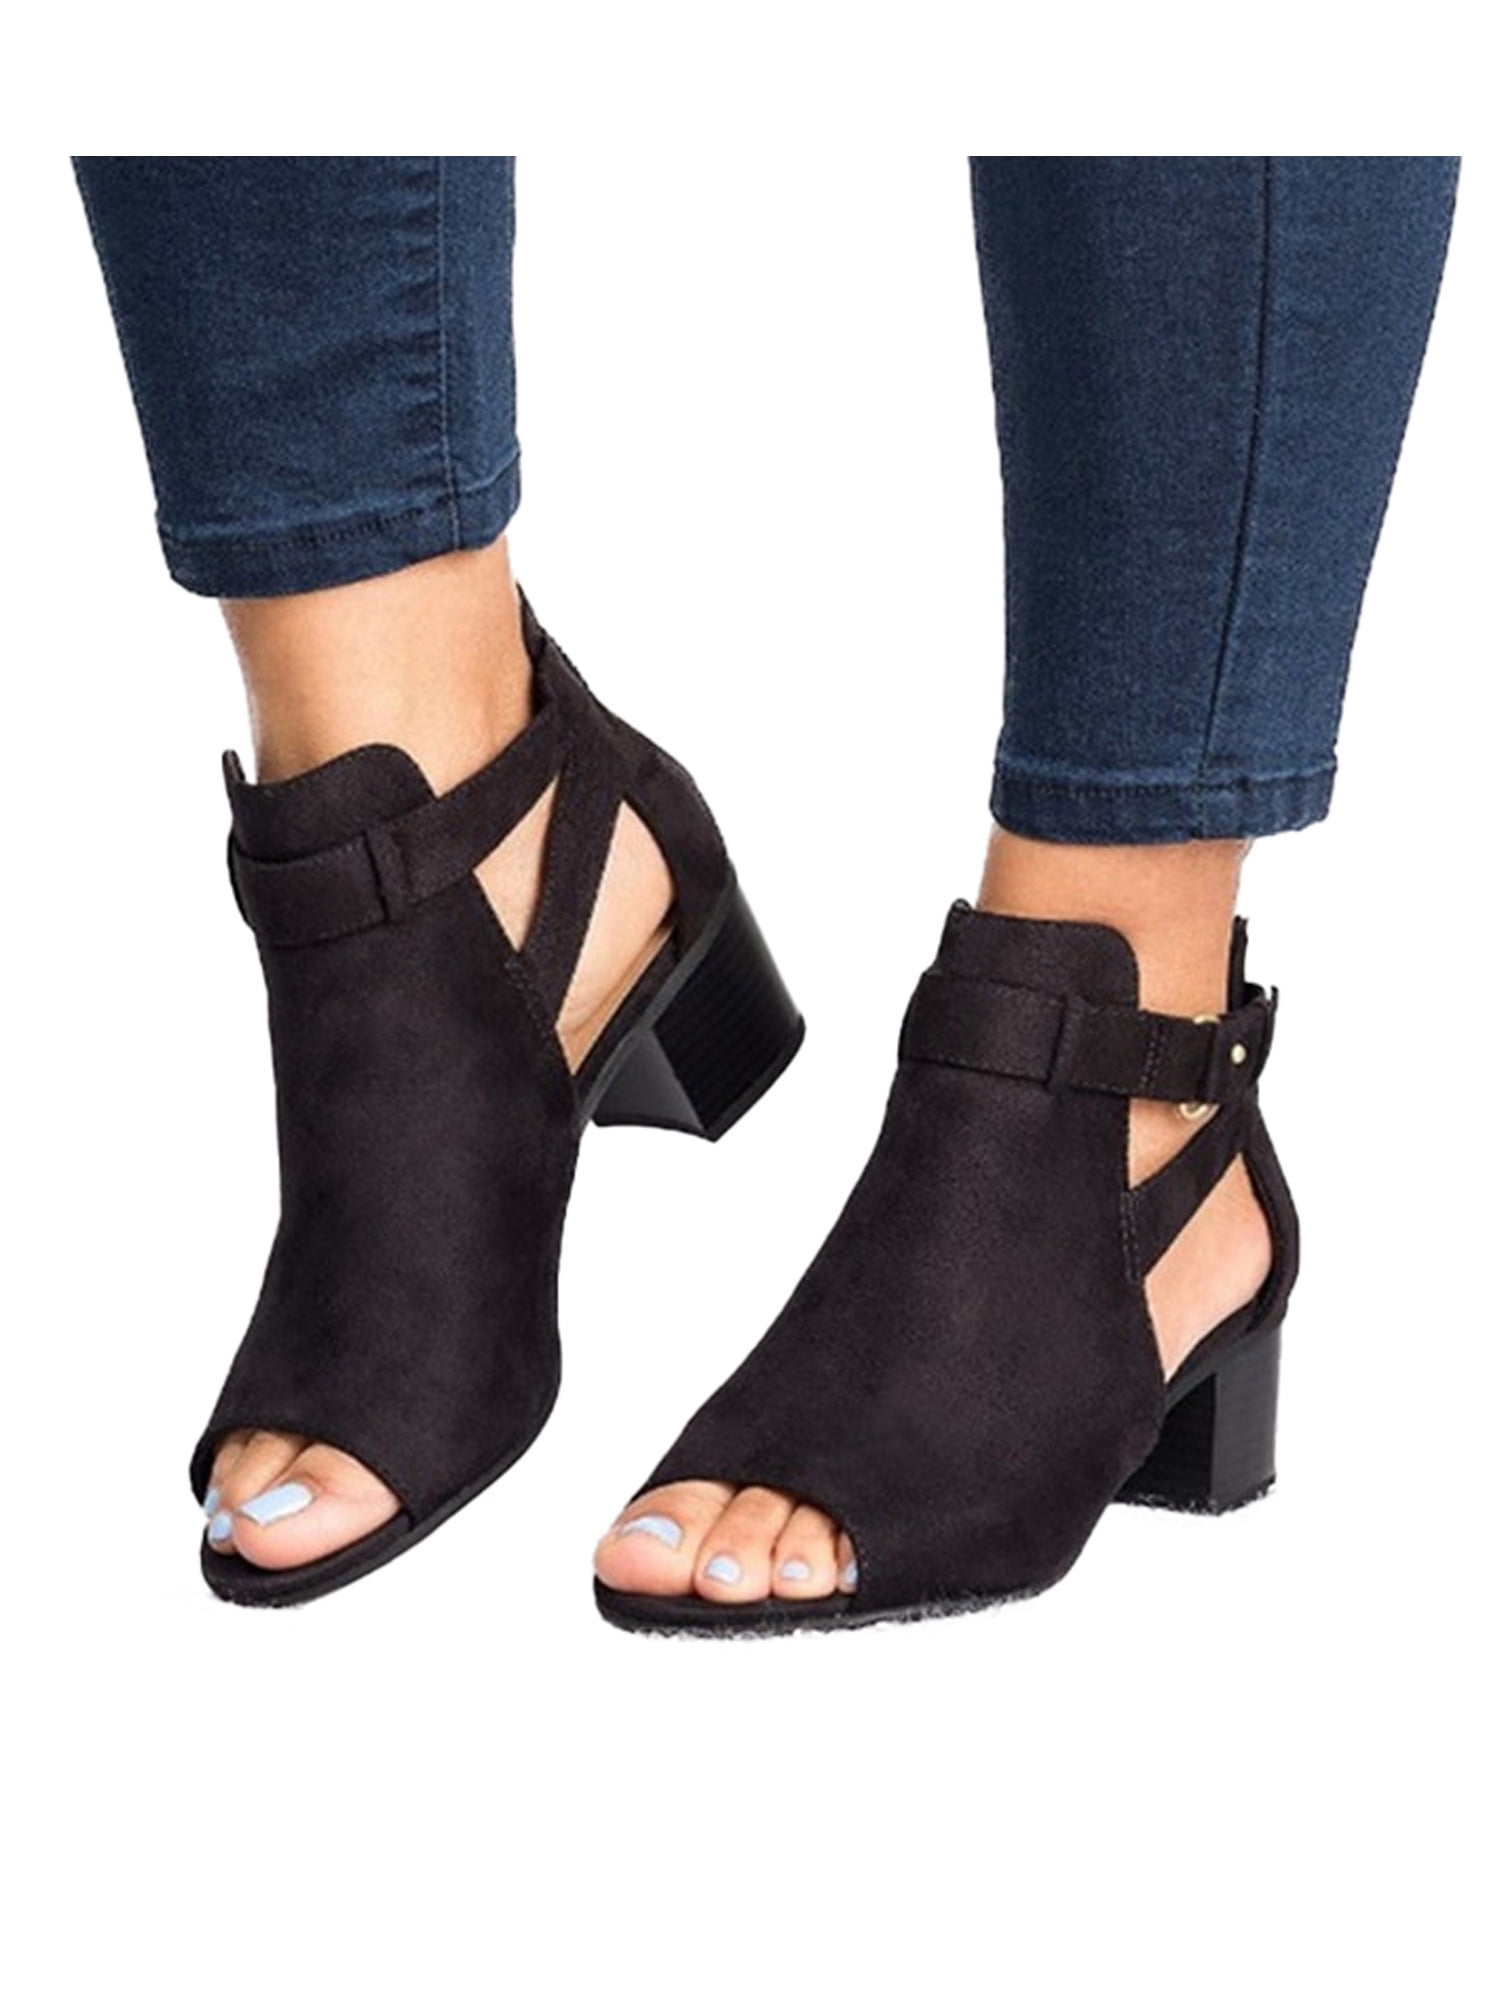 Womens Square Toe Ankle Booties Ladies Zip Up High Slim Block Heel Dressy Boots